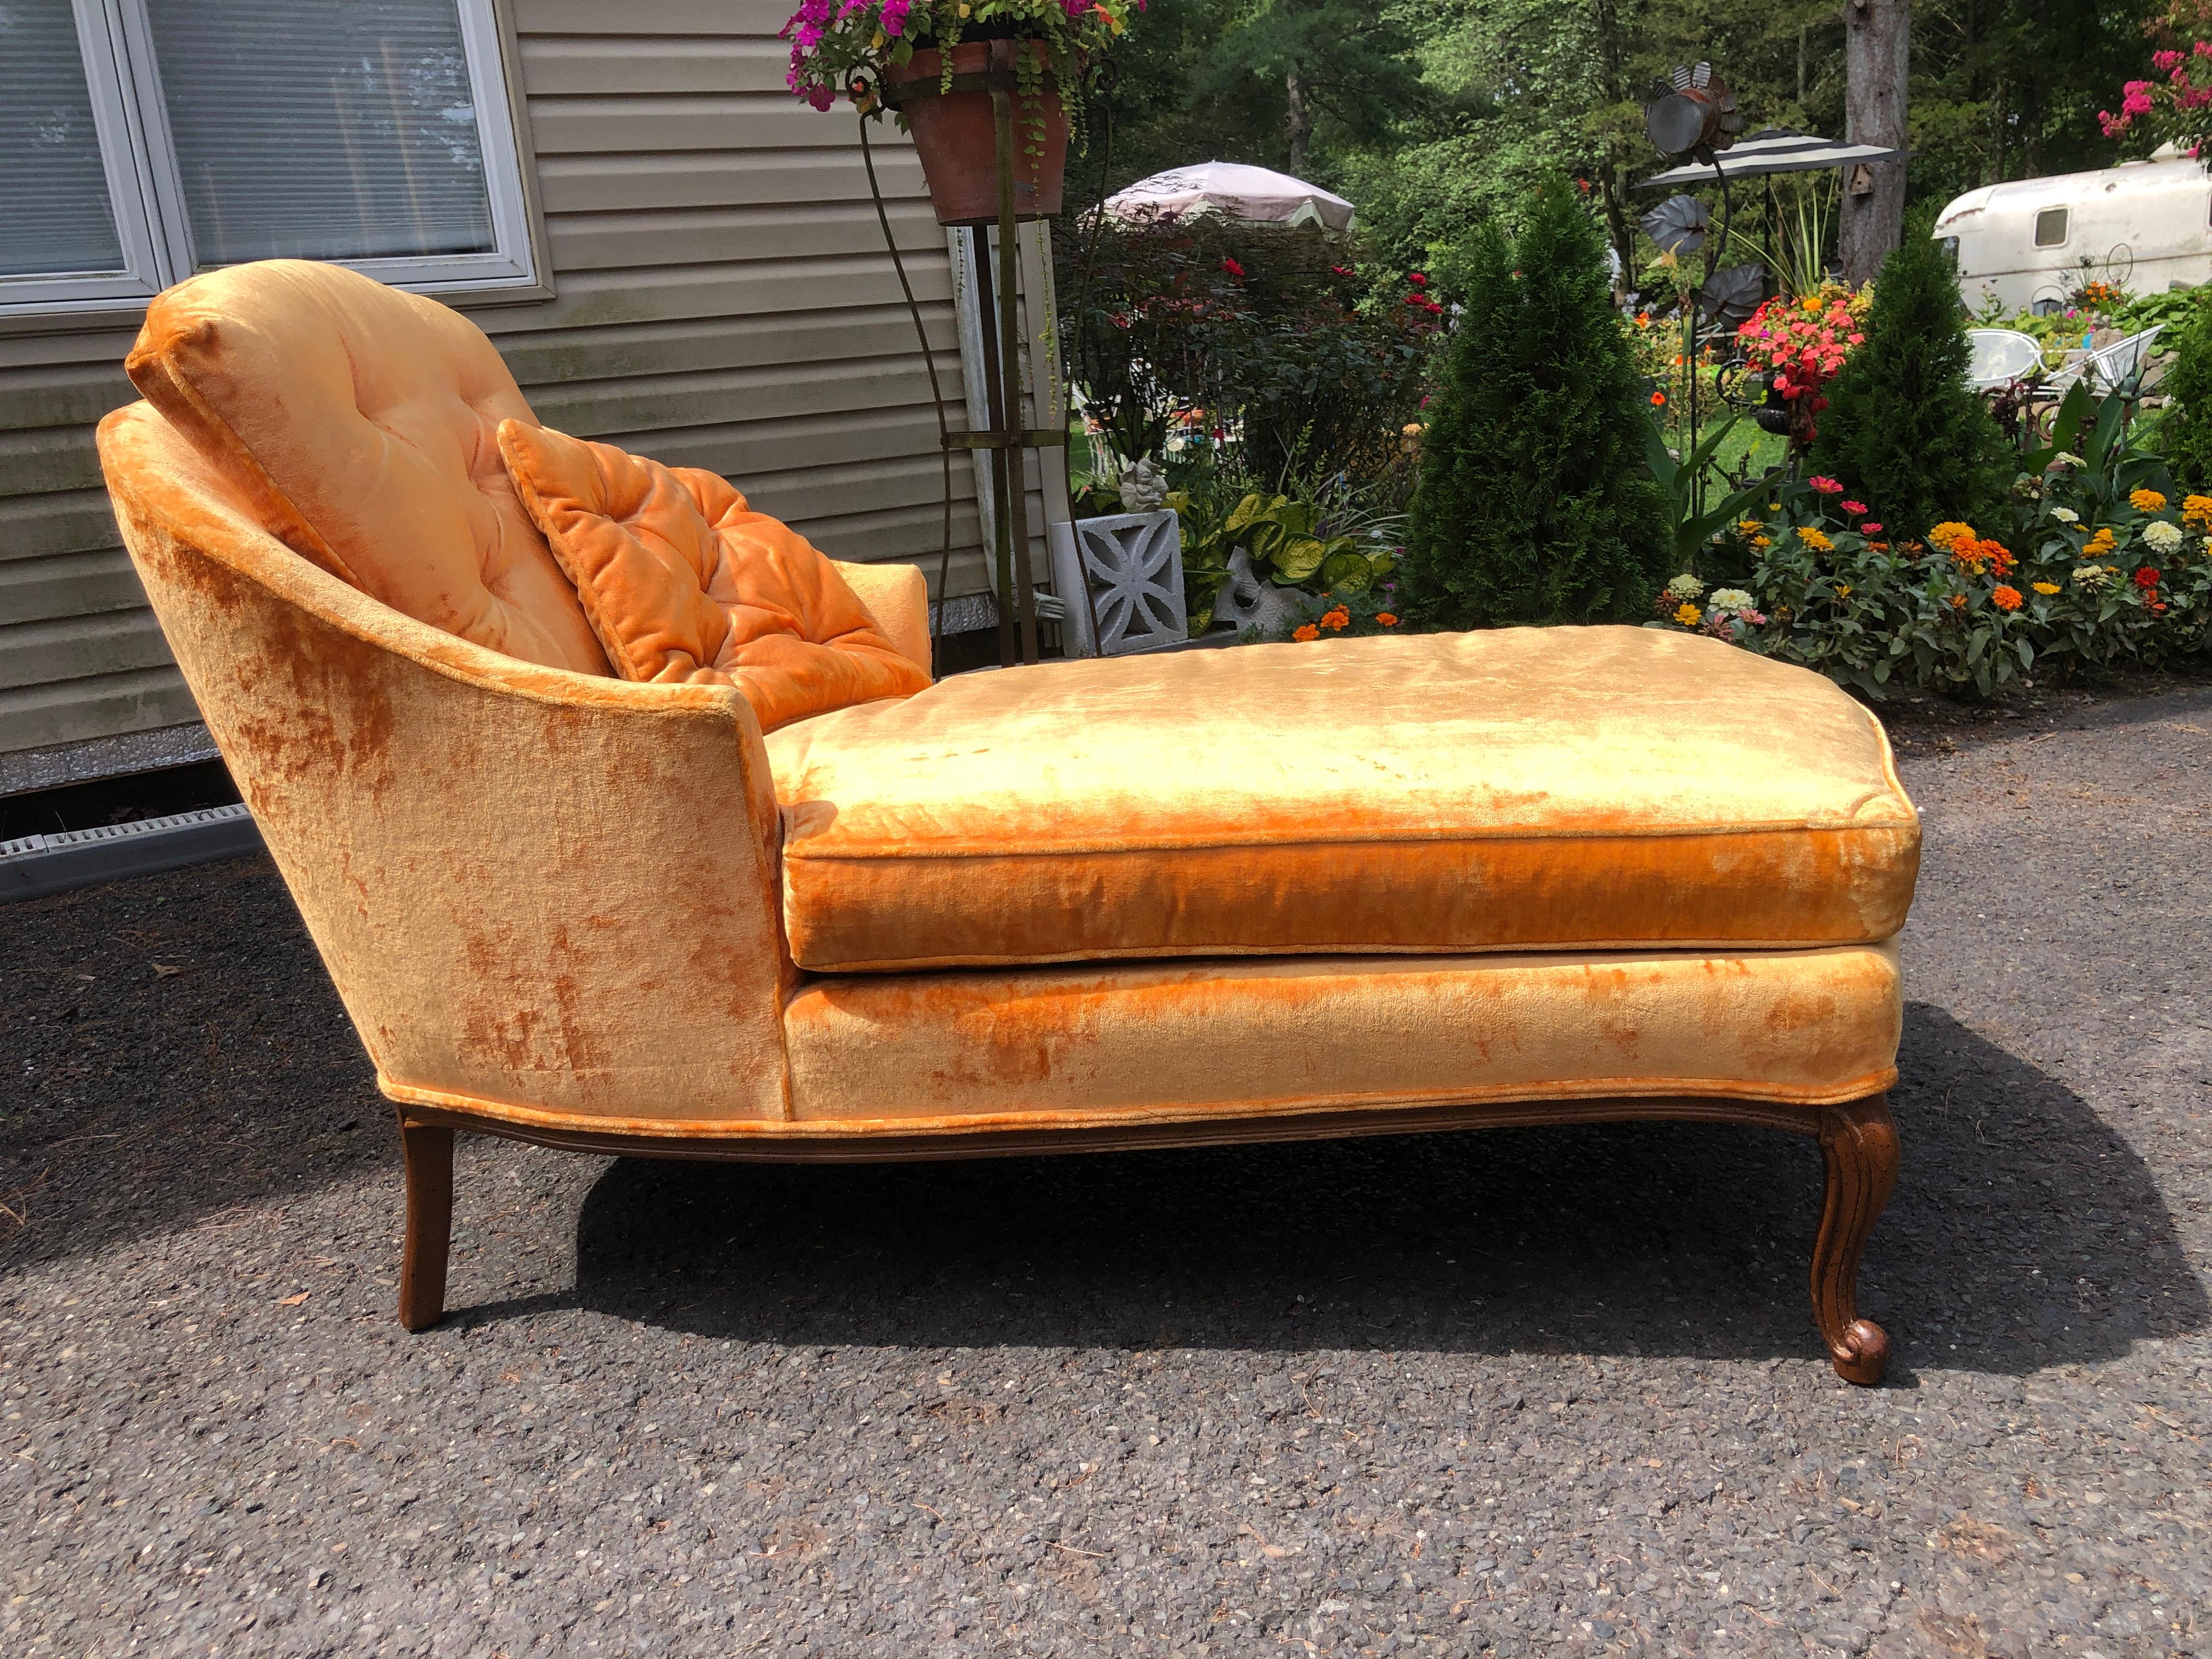 Sensationnelle petite chaise longue tapissée de style provincial français.  Nous adorons le velours orange abricot lourd d'origine en état vintage propre.  Dimensions : 32